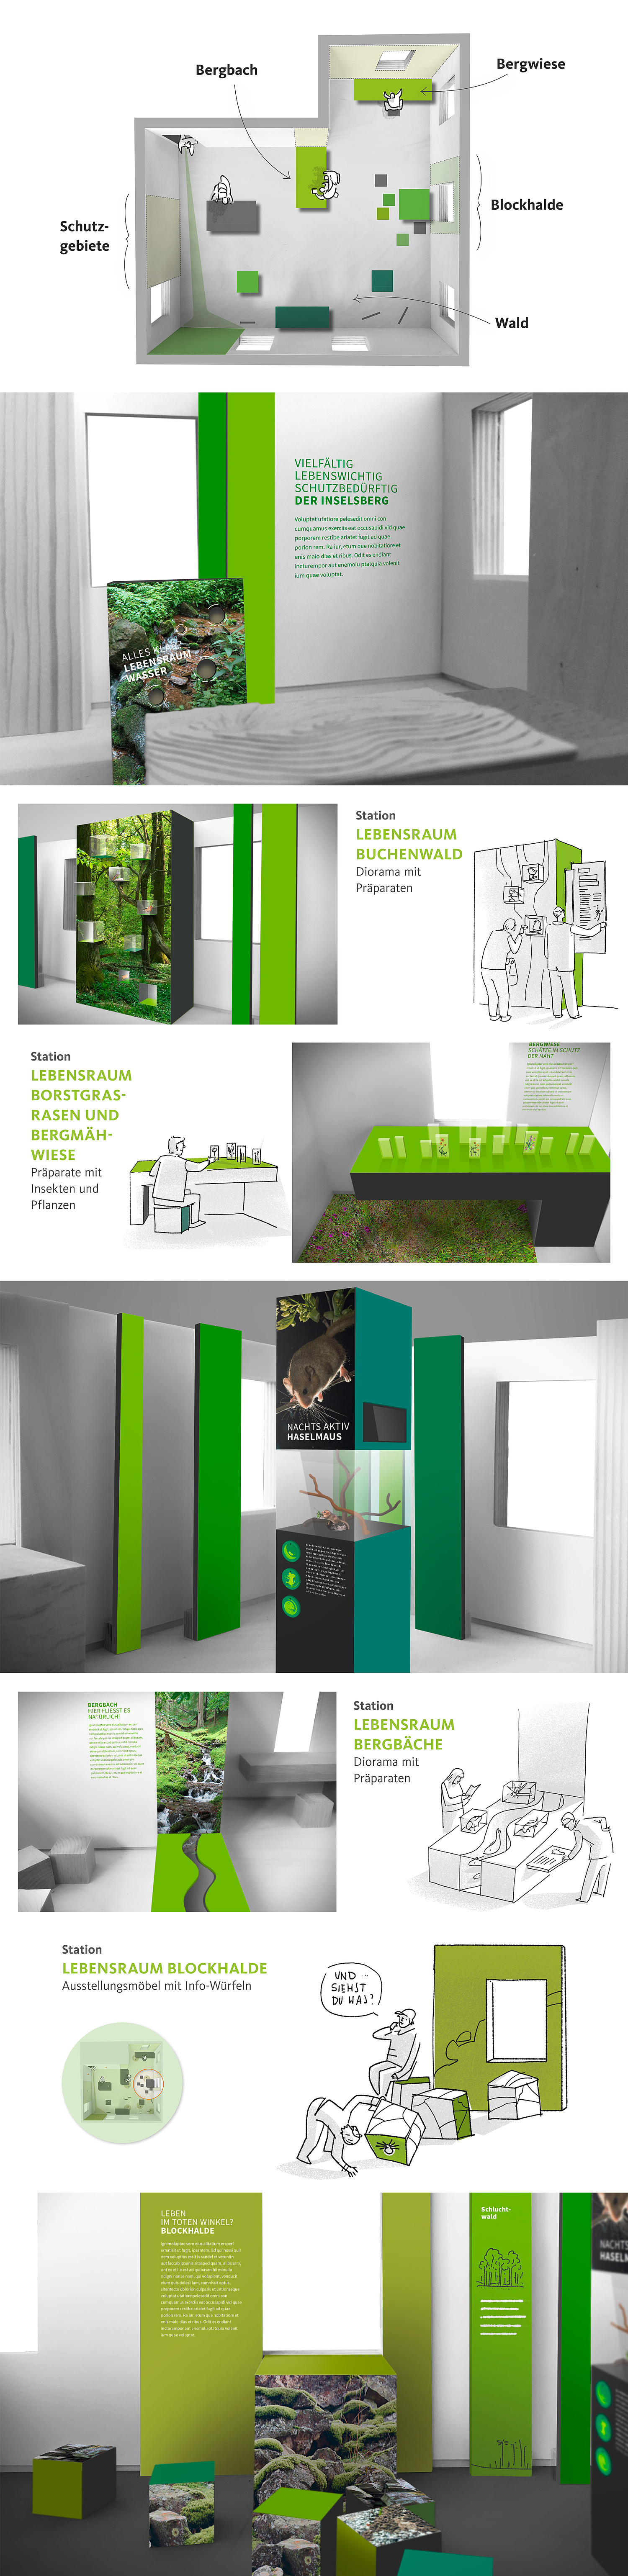 Skizzen und Darstellungen aus der Konzeptionsphase zu Planung und Entwurf der Ausstellung Natur & Schutzgebiete in der 2. Etage (© Papenfuss | Atelier)